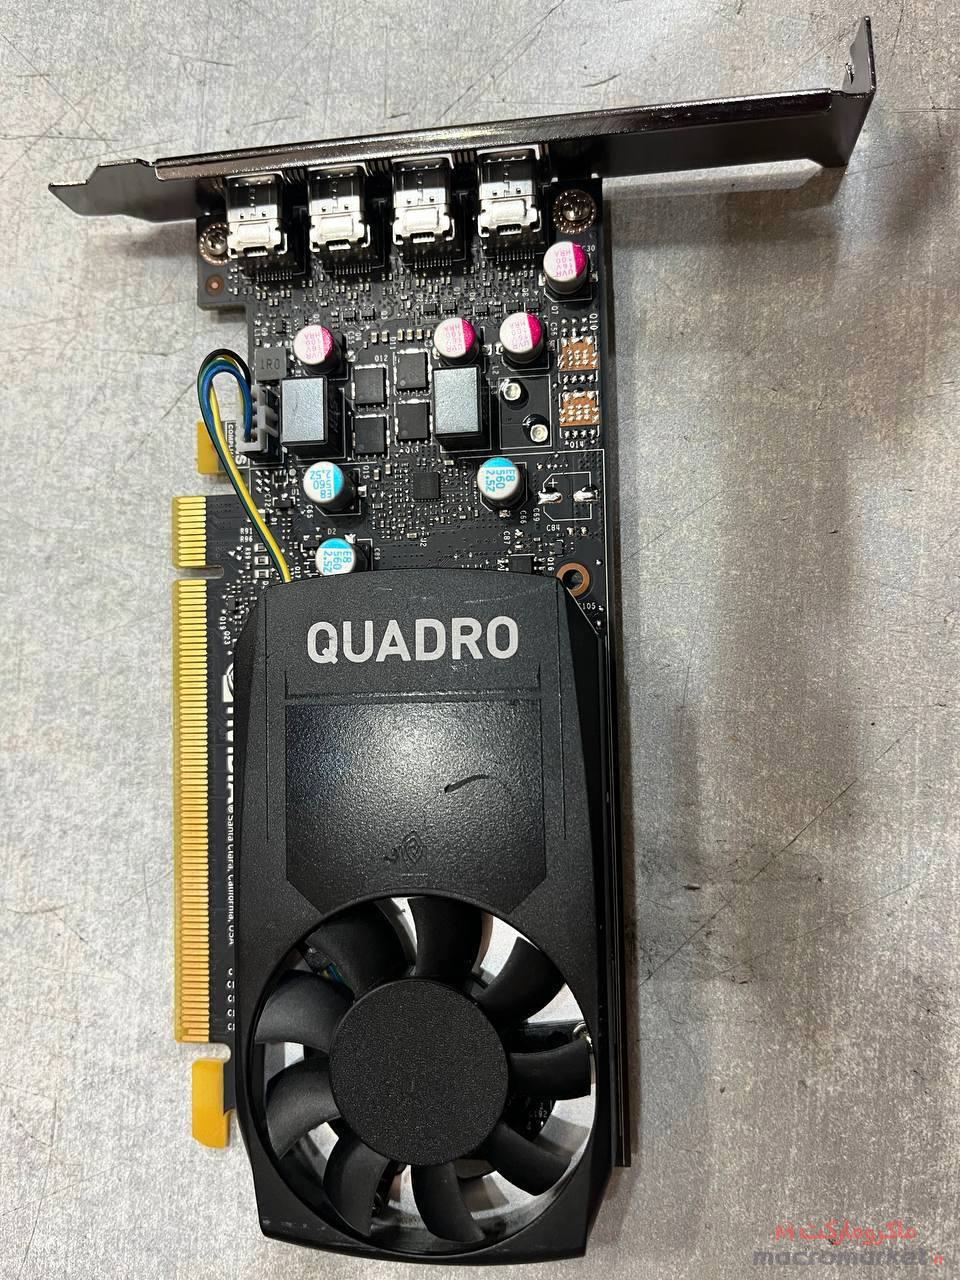 کارت گرافیک  - 2G DDR5 - Quadro P620 - استوک - چک شده - مناسب گیم 